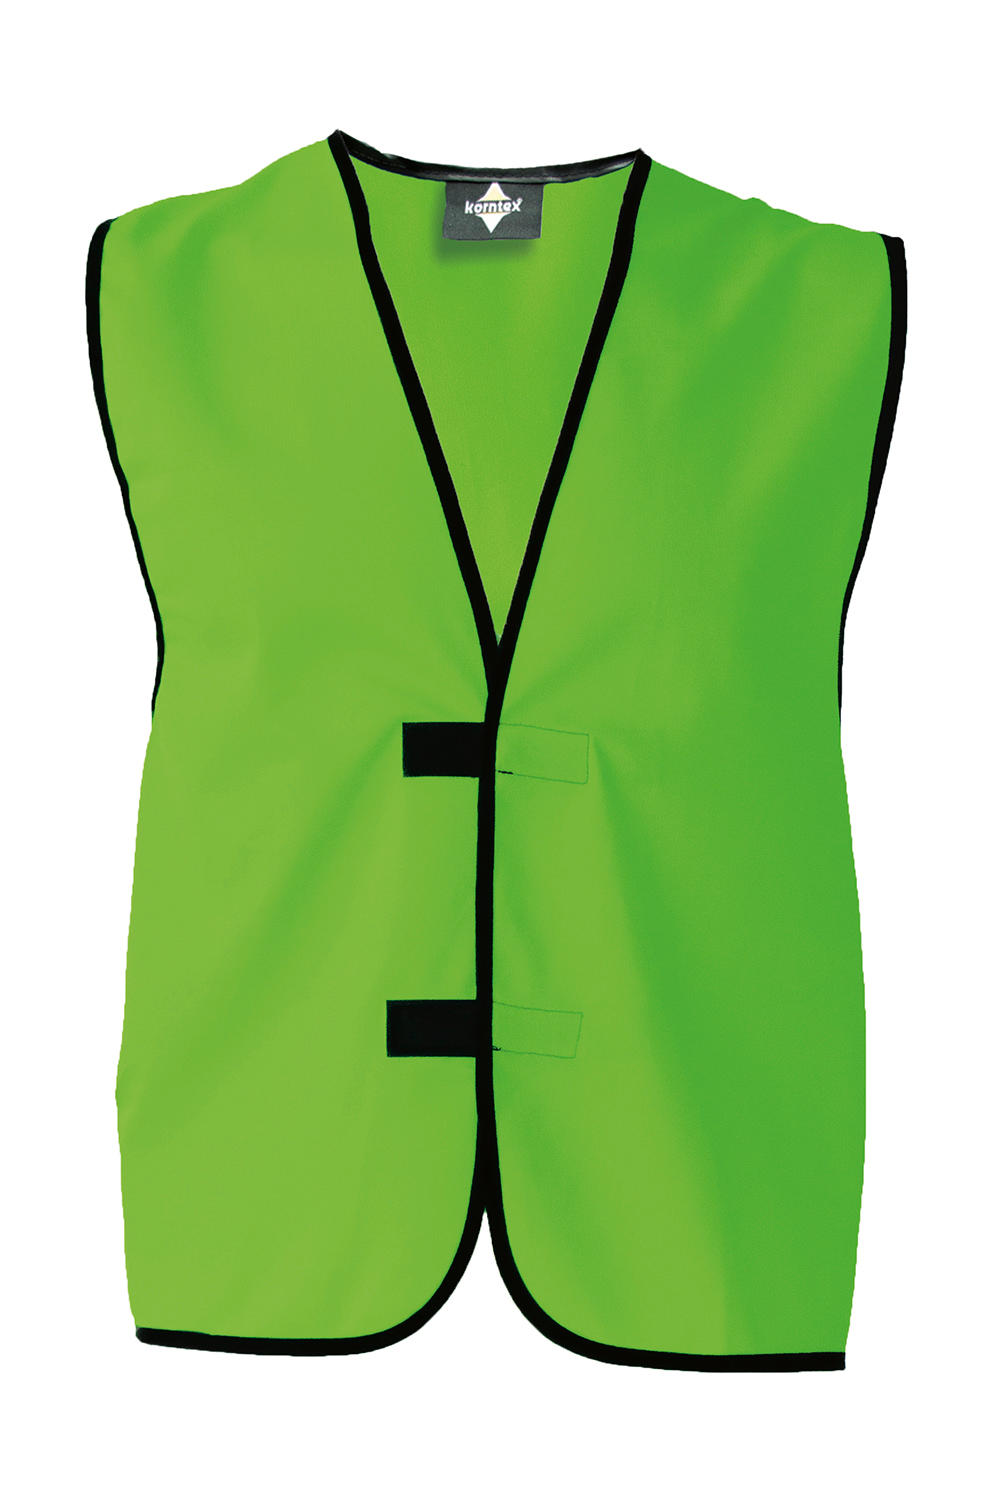 Identifikačná vesta "Leipzig" - green